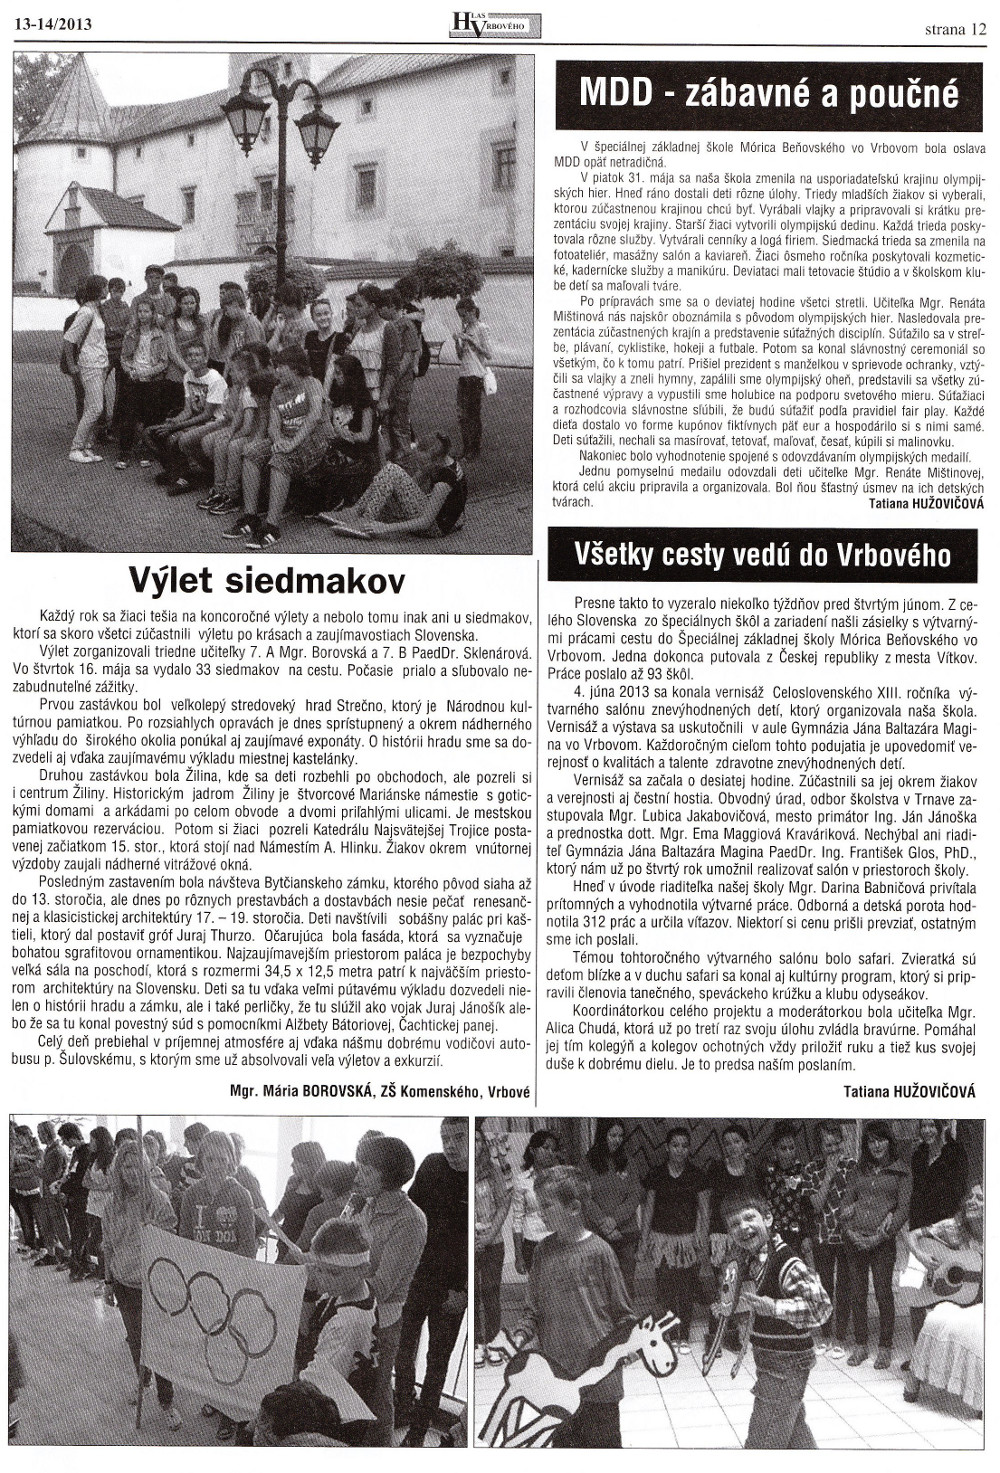 Hlas Vrbového 14/2013, strana 12